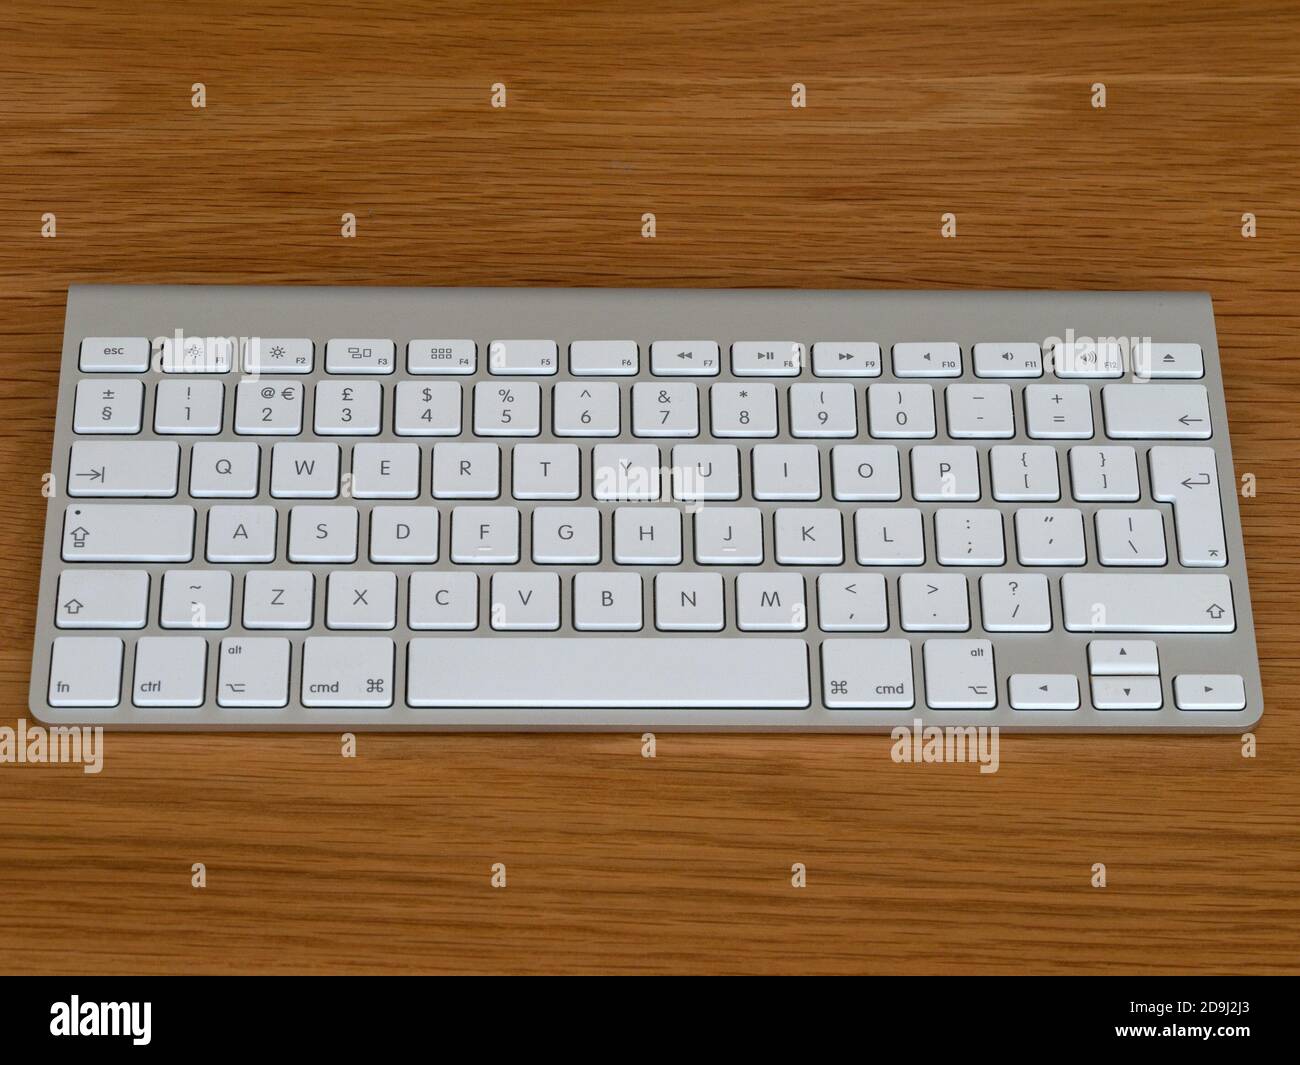 Apple Magic kabelloser Bluetooth-Computer GB englische QWERTY-Tastatur mit weißen Tasten und silberfarbenem eloxiertem Aluminiumgehäuse auf Holzhintergrund. Stockfoto